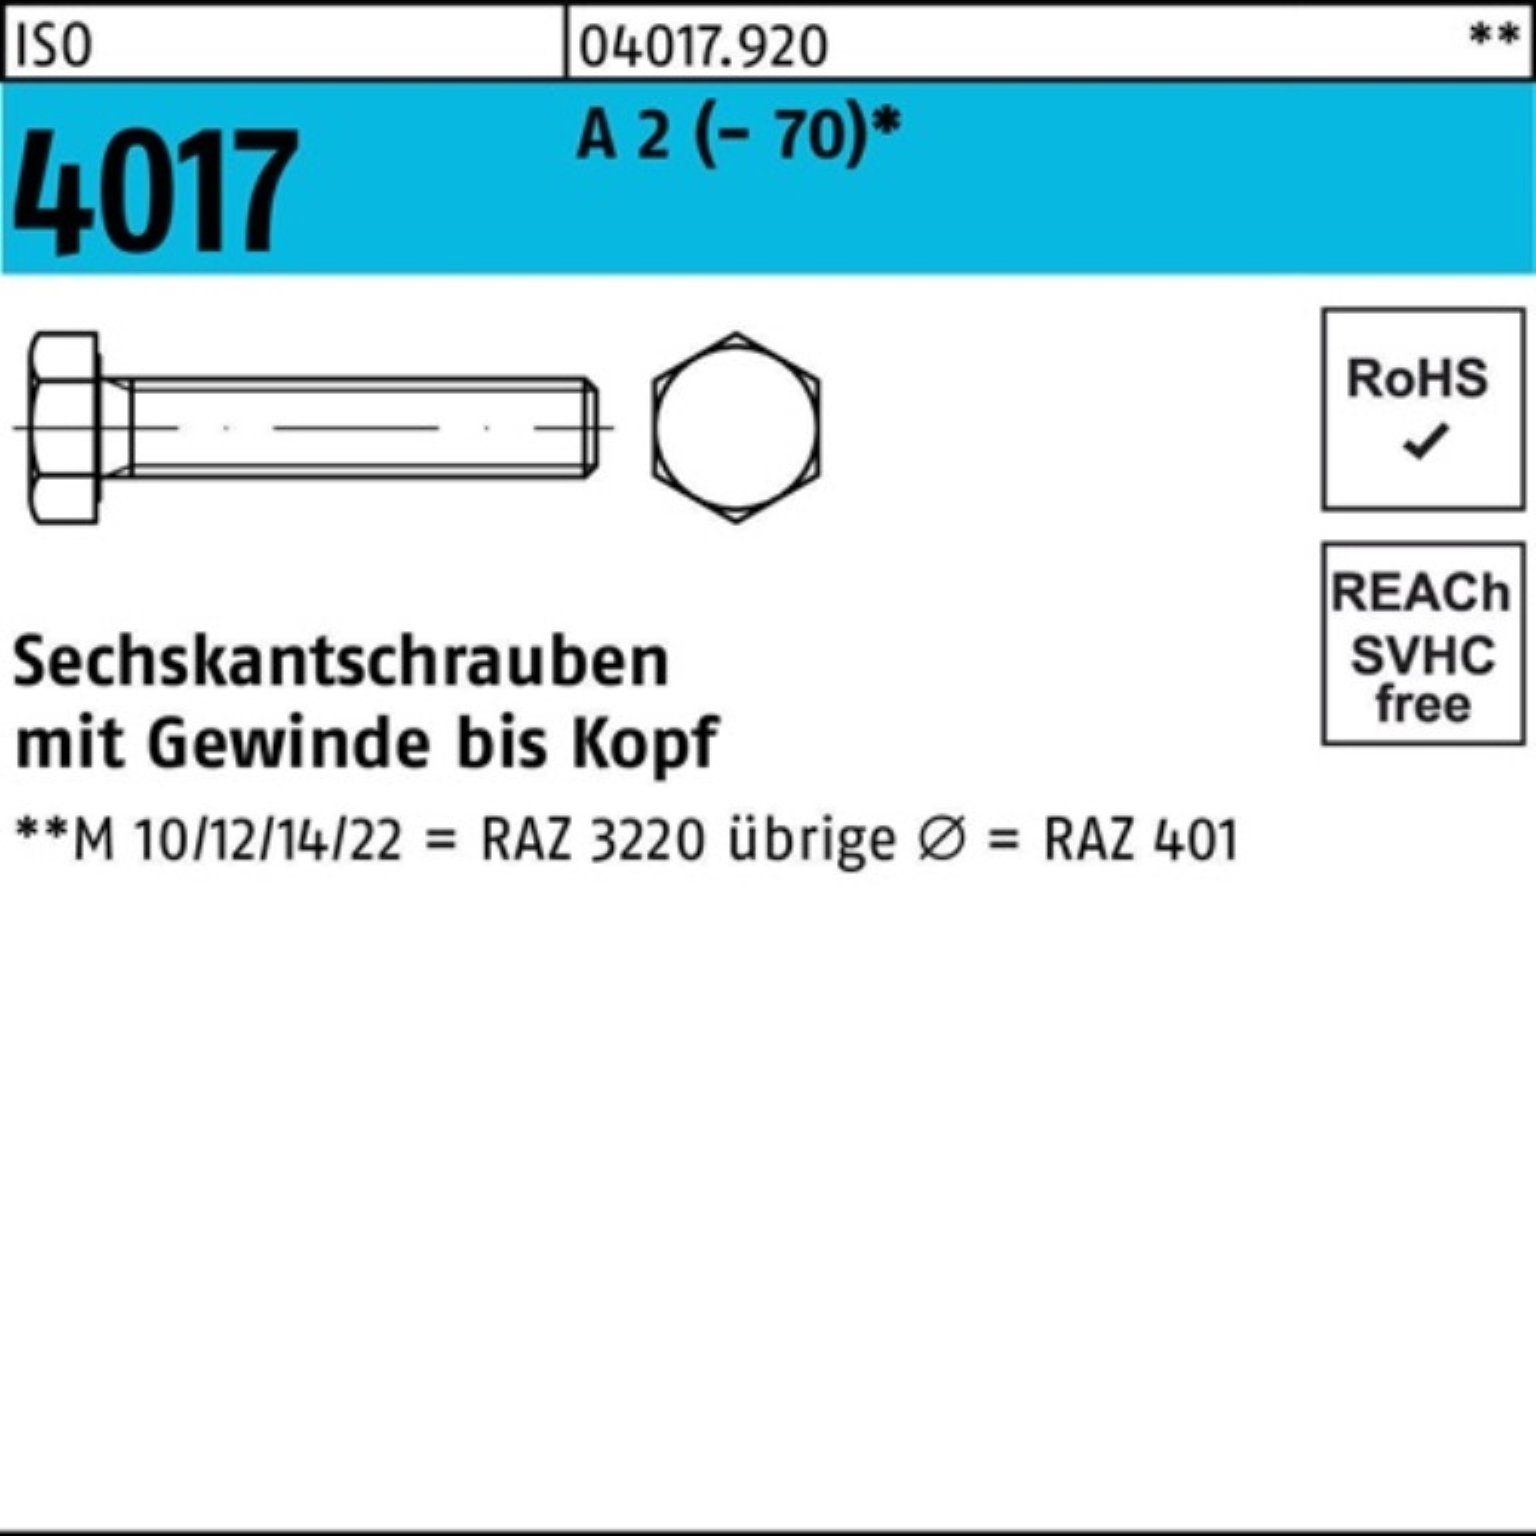 Bufab Sechskantschraube 100er Pack Sechskantschraube ISO 4017 VG M16x 50 A 2 (70) 50 Stück